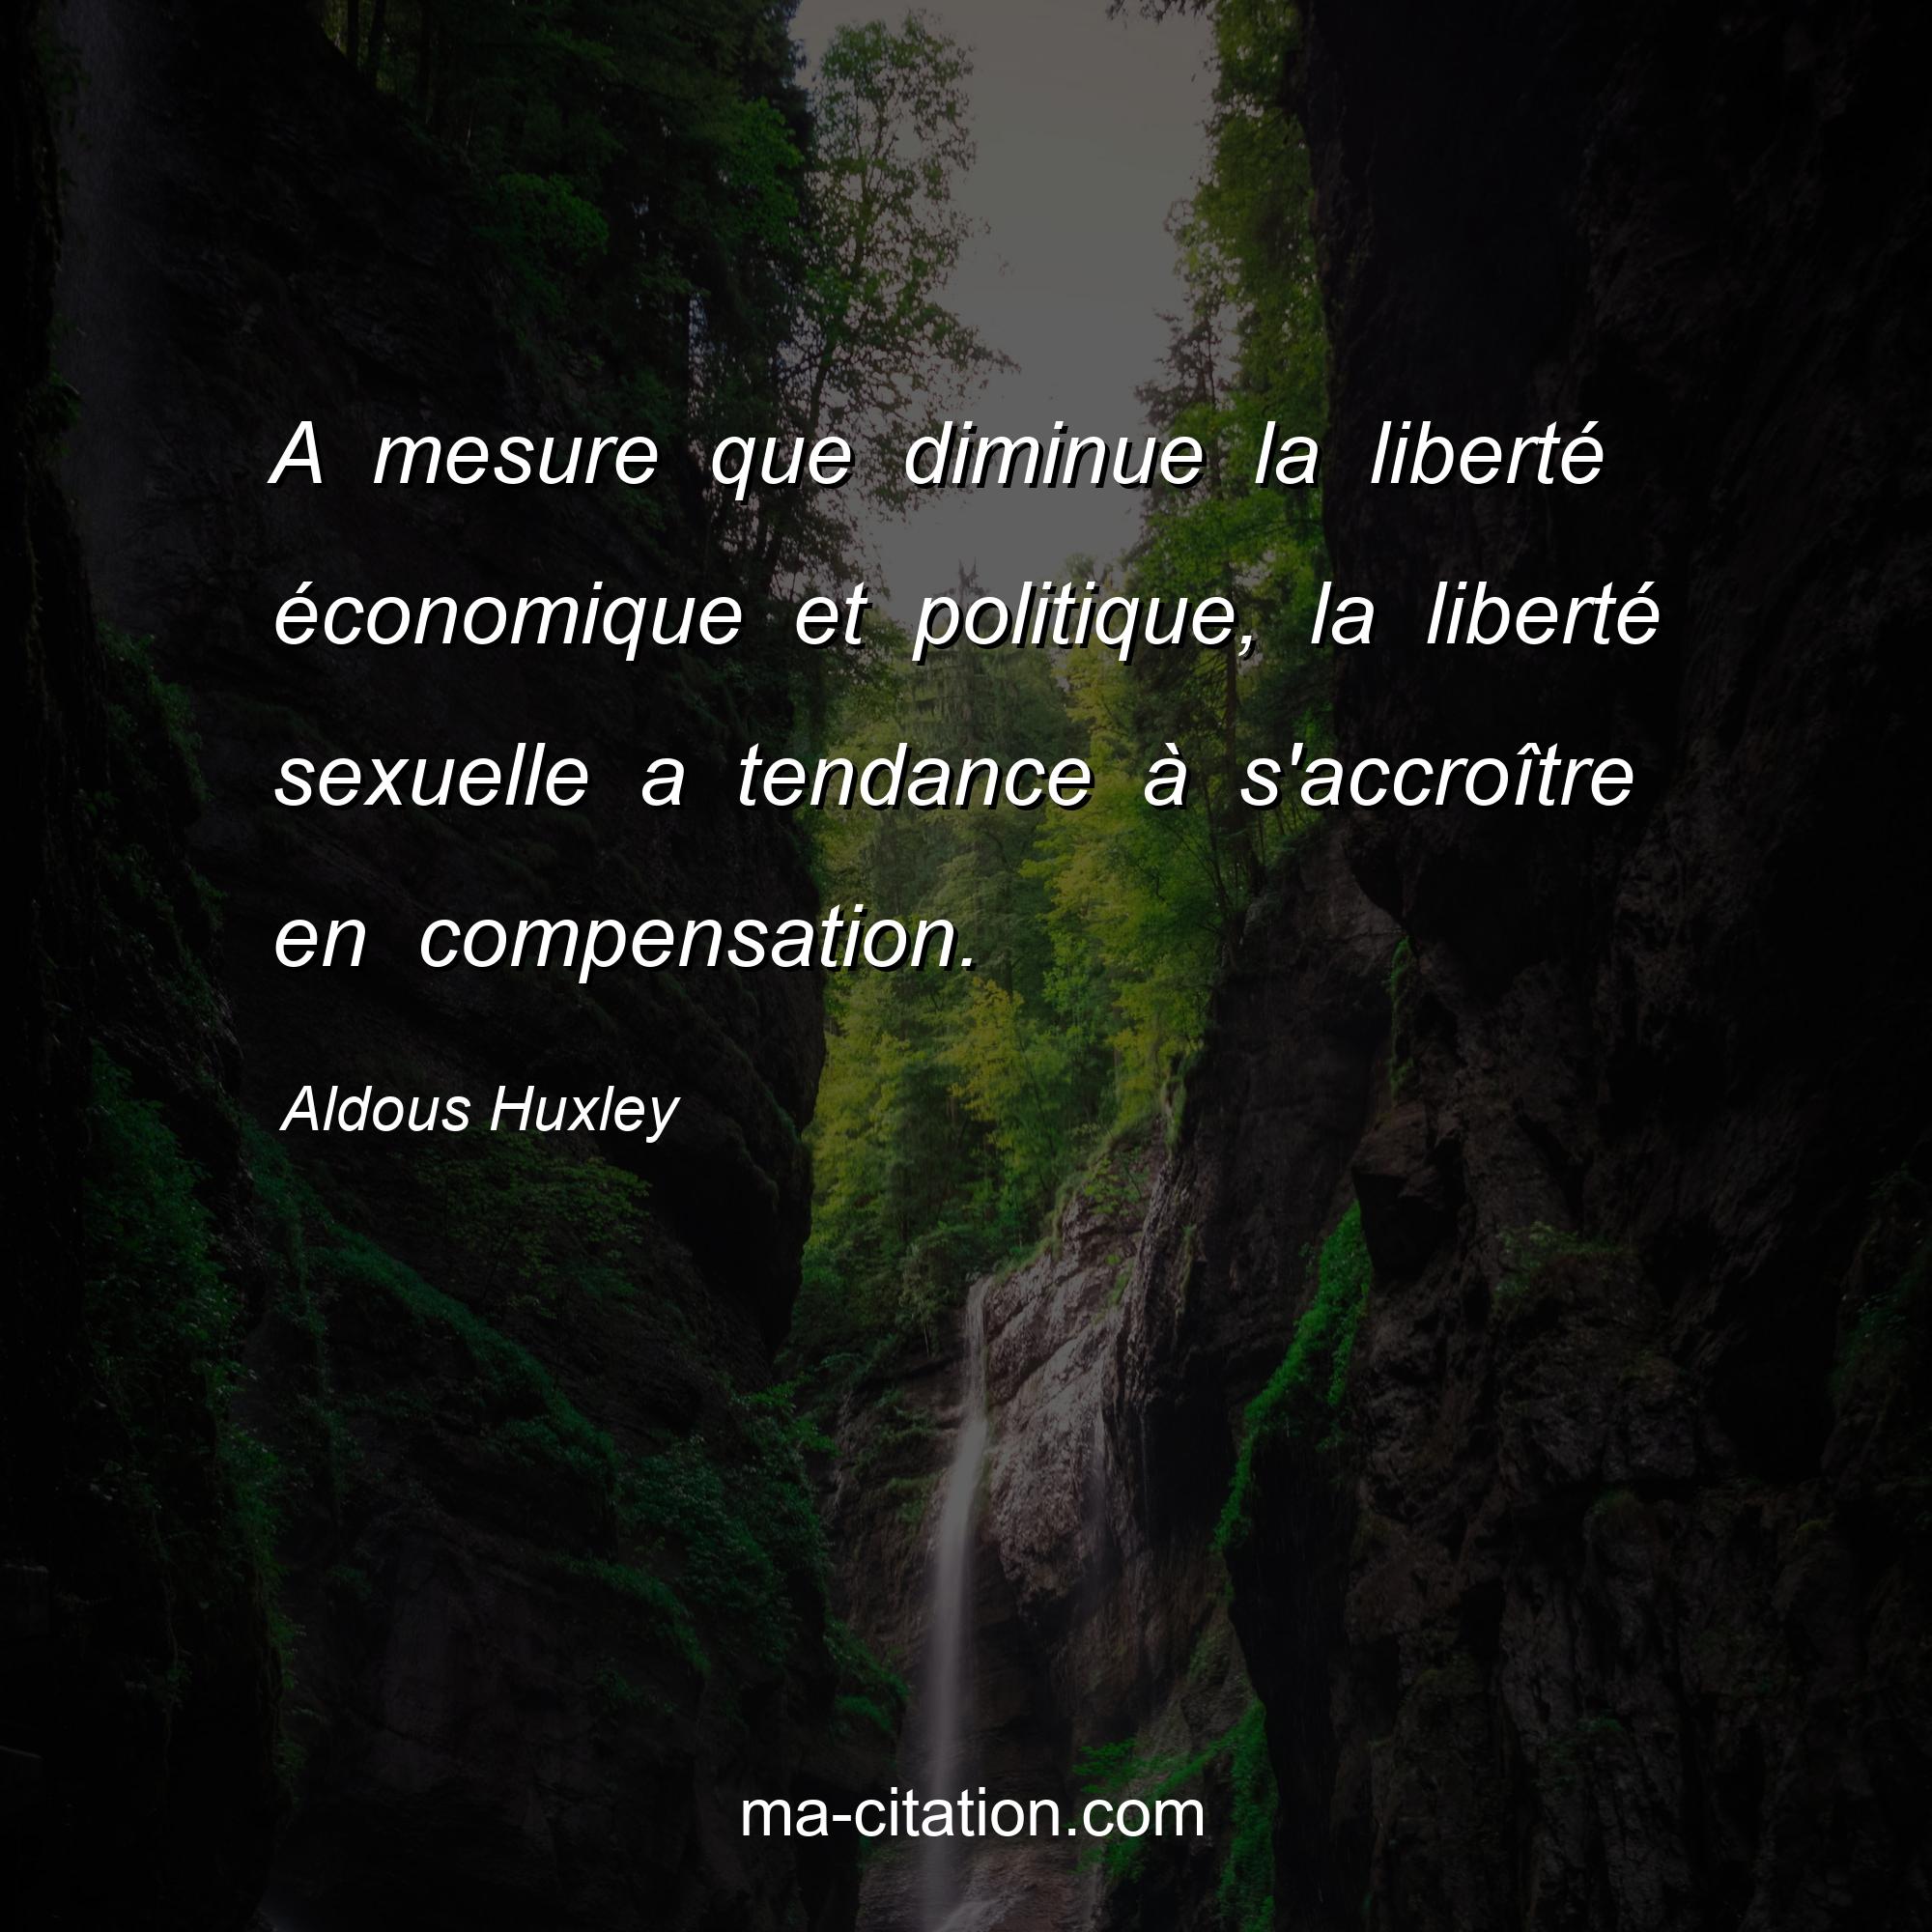 Aldous Huxley : A mesure que diminue la liberté économique et politique, la liberté sexuelle a tendance à s'accroître en compensation.